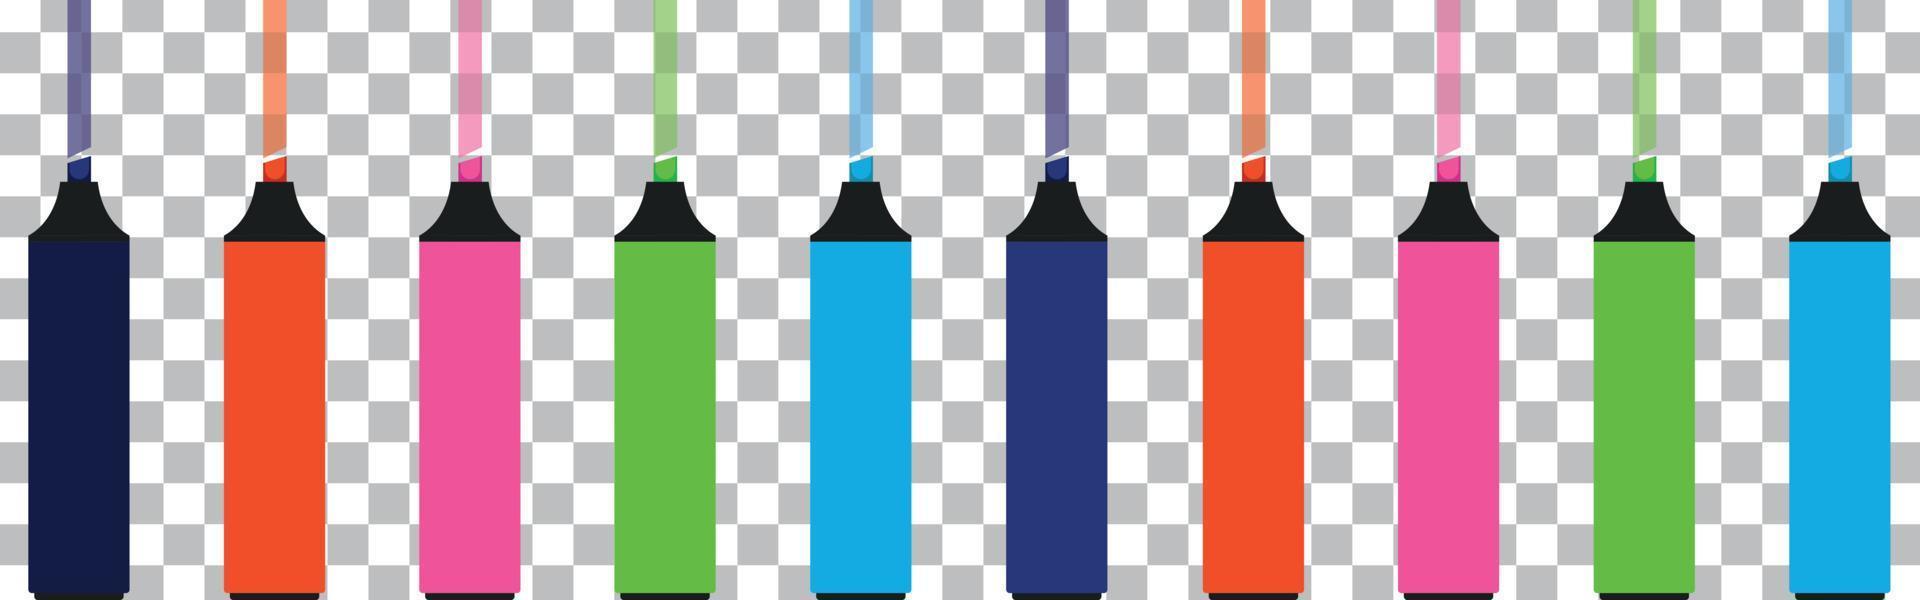 pennarelli fluorescenti in diversi colori vettoriali. elementi raggruppati per facili modifiche. vettore